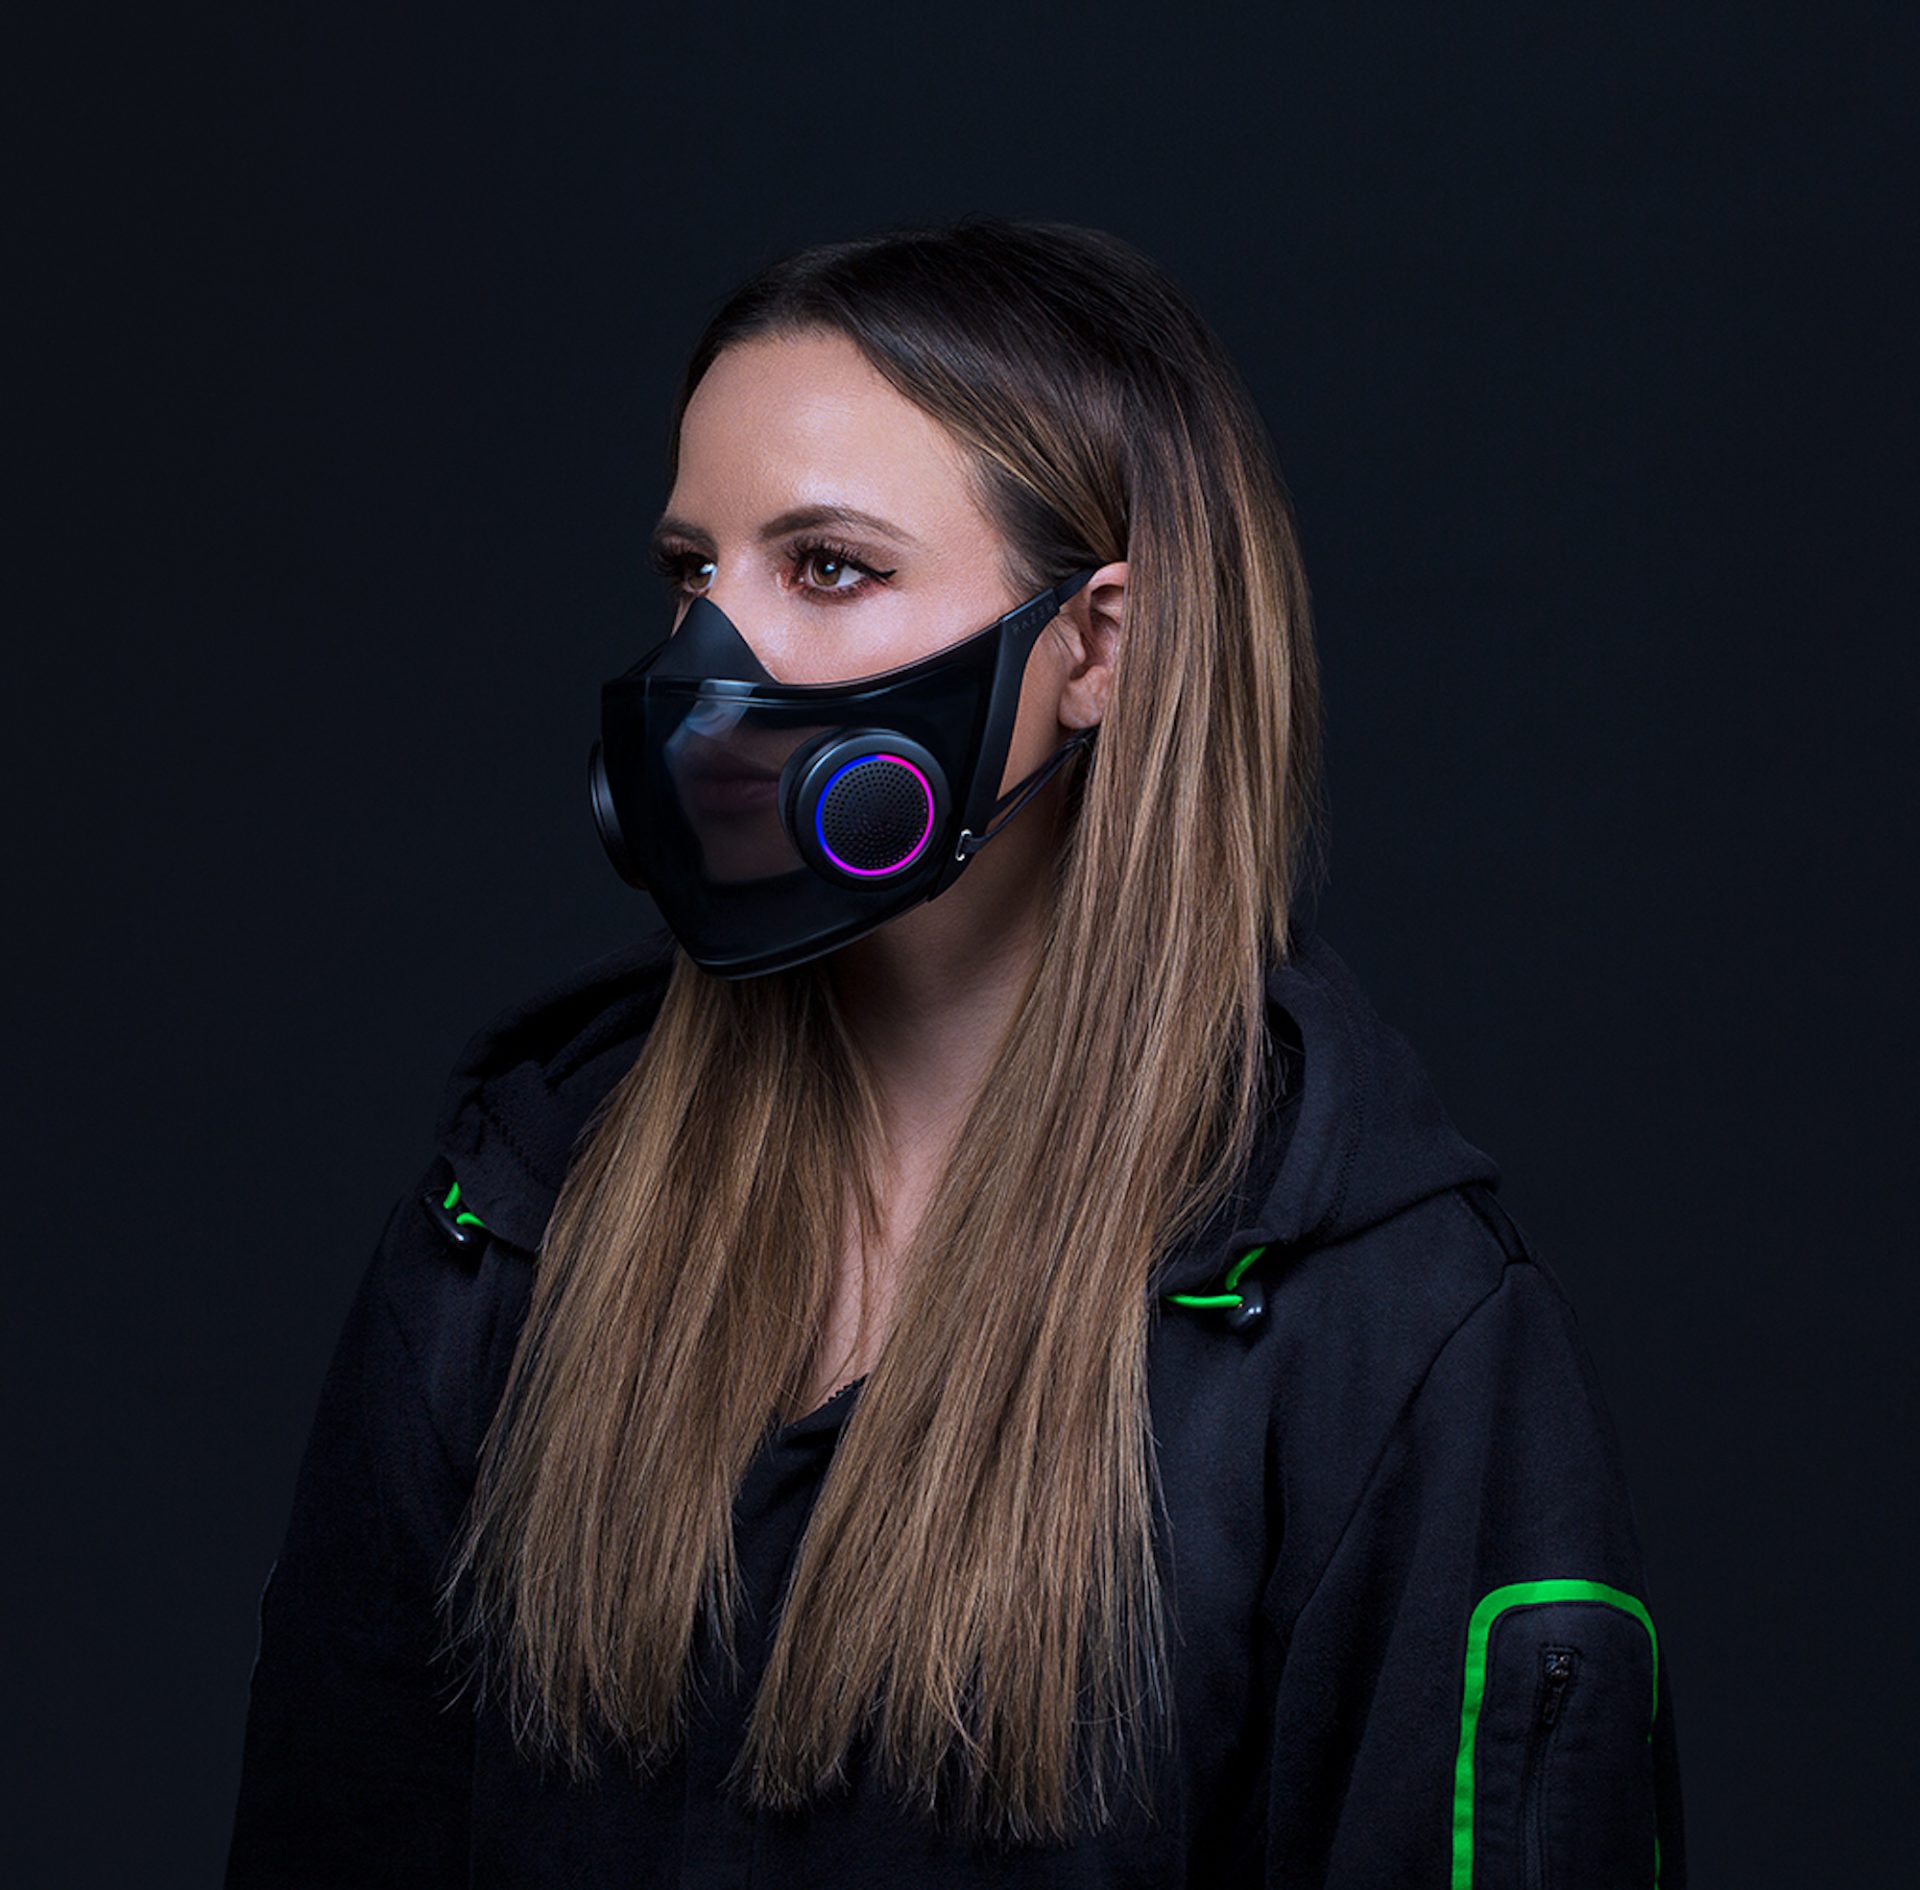 Razer conçoit un masque de protection qui s'illumine pour les gamers